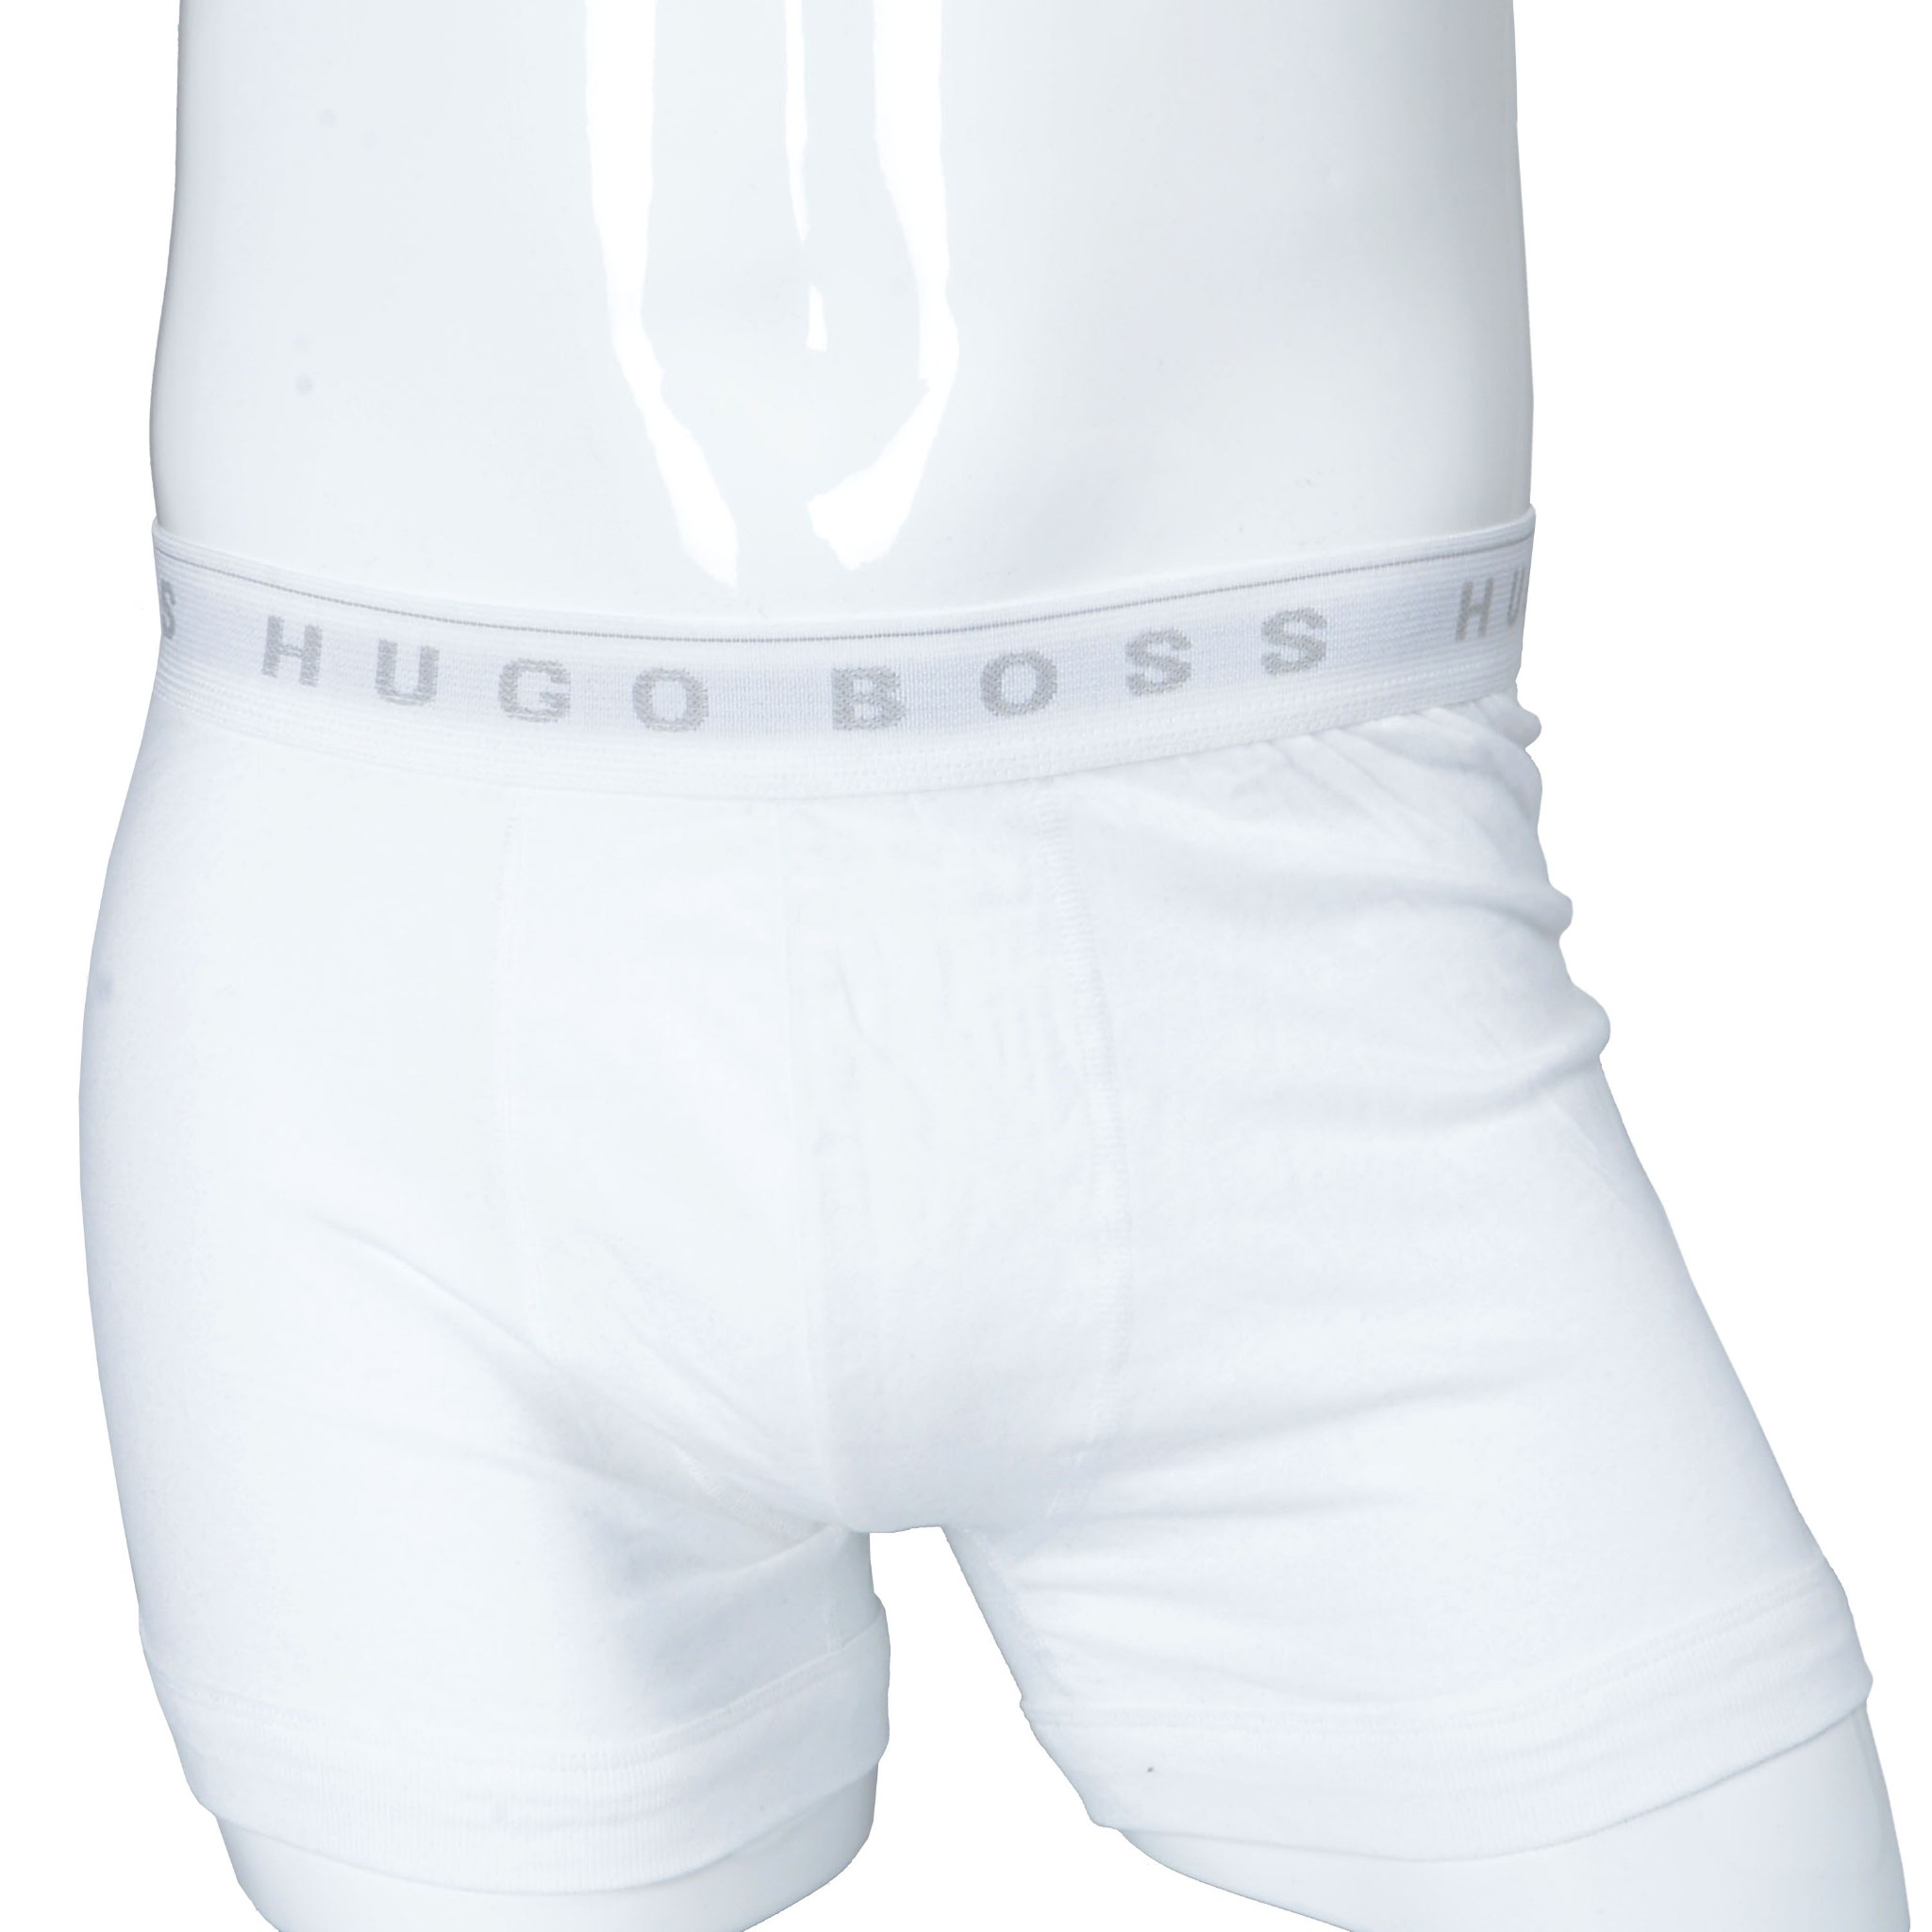 hugo boss white boxers